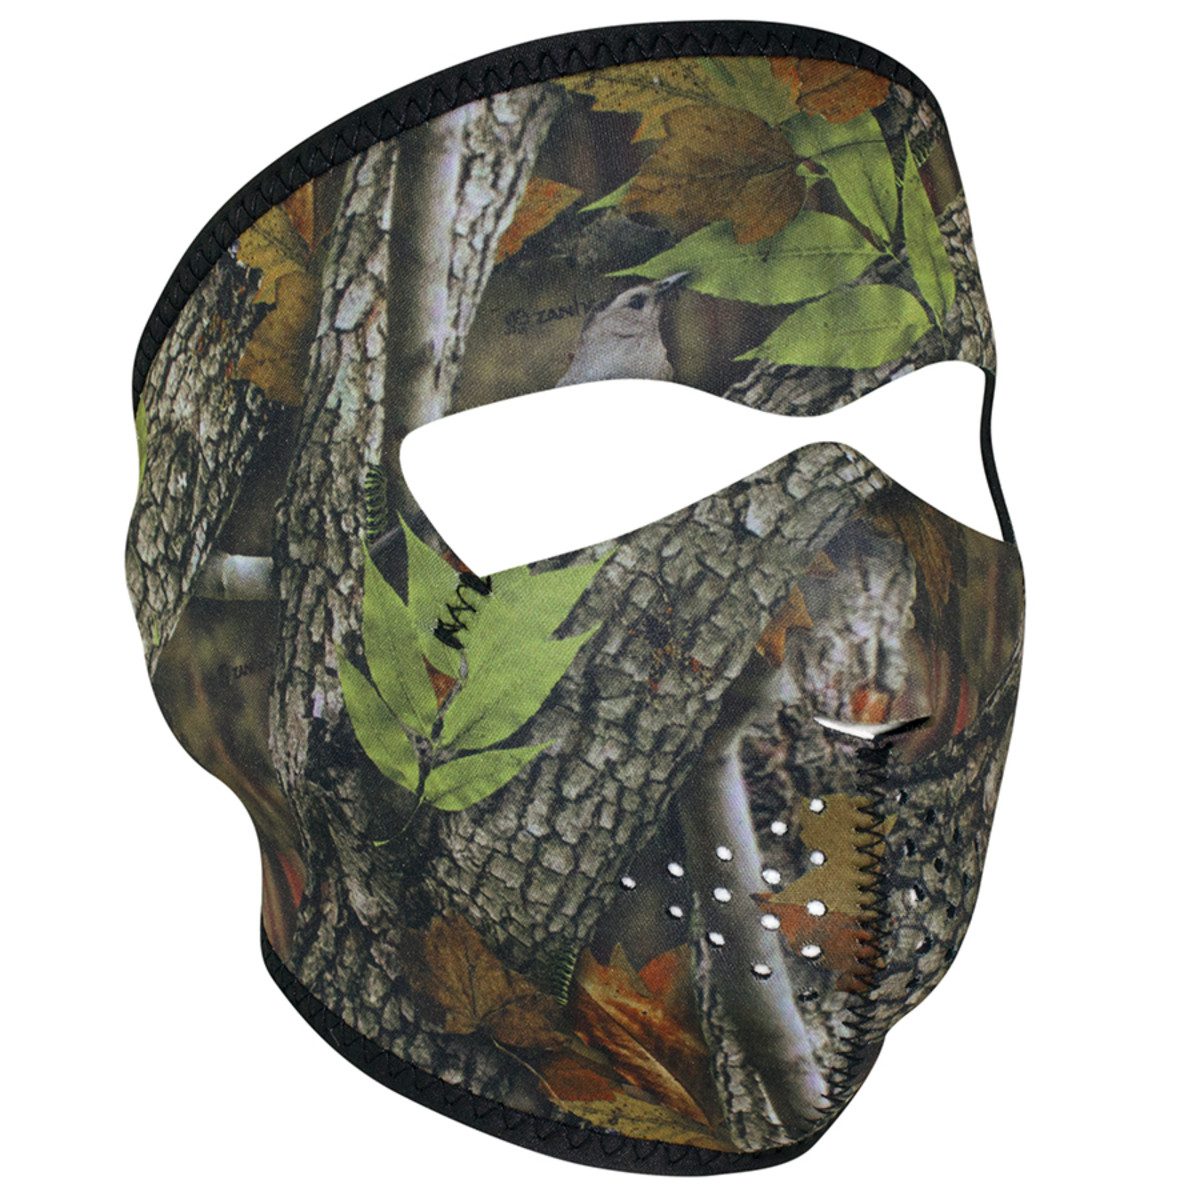 Zan Headgear Neoprene Full Face Mask - Forest Camo